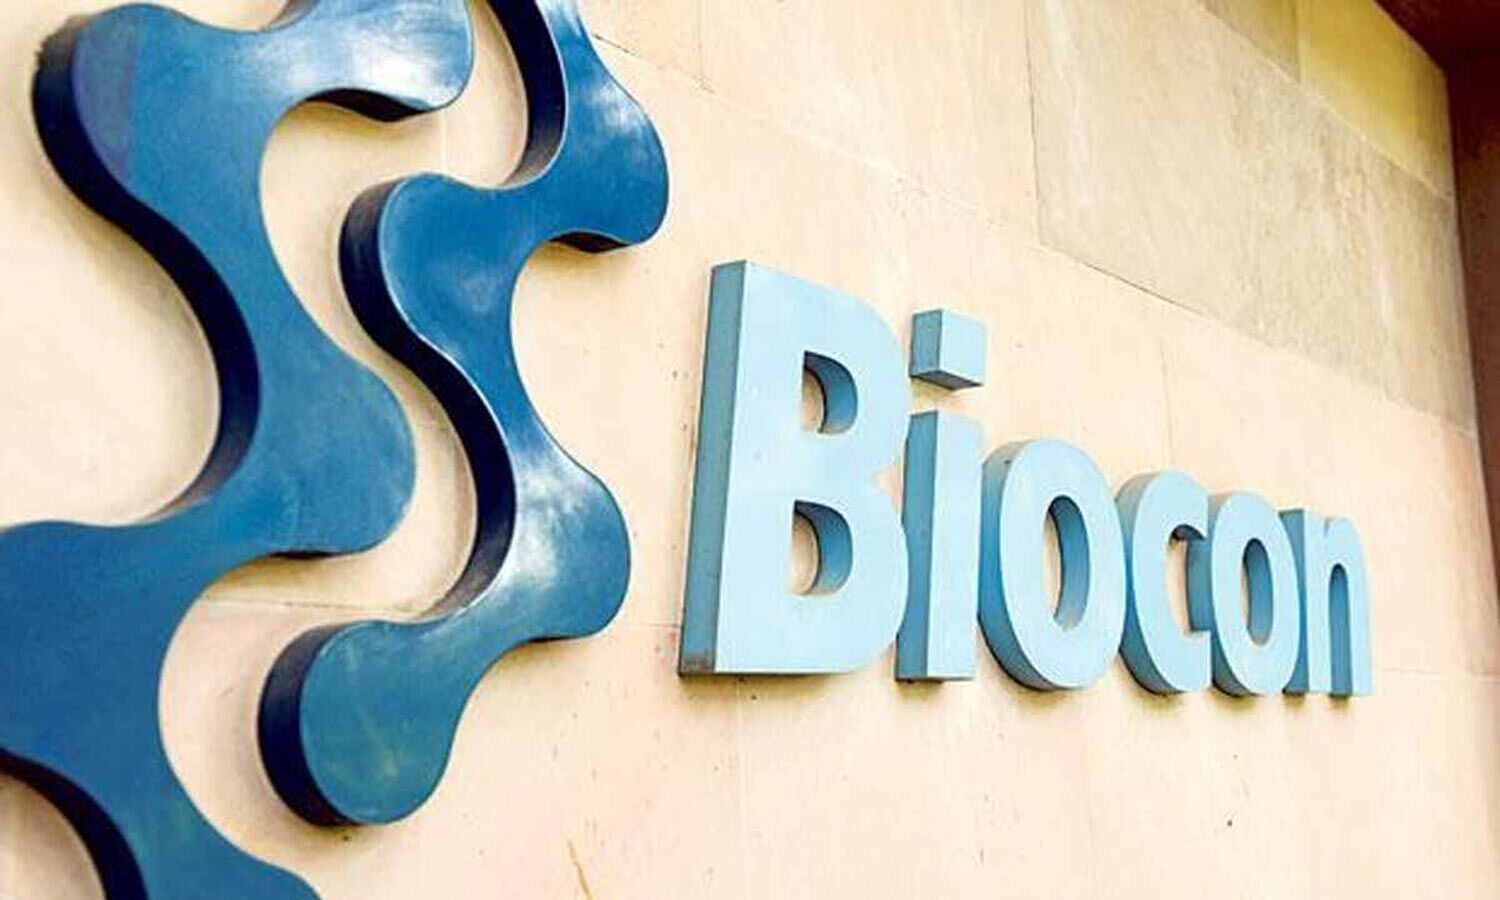 Biocon, Mylan win patent rights for Insulin Glargine Device against Sanofi